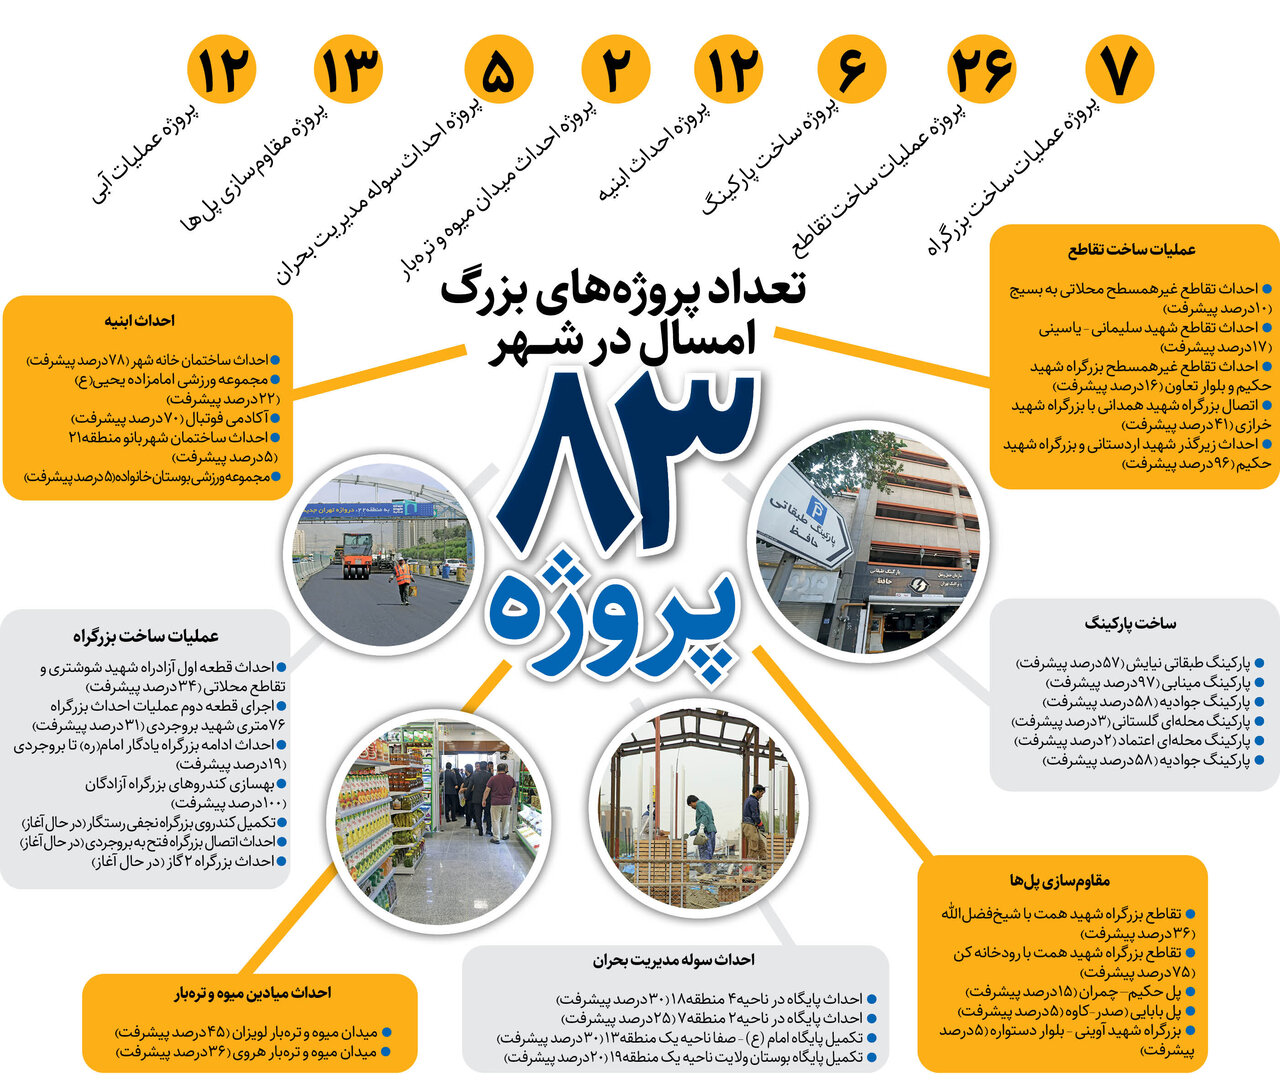 جزییات برپایی 83 کارگاه عمرانی بزرگ در تهران+ اینفو گرافیک